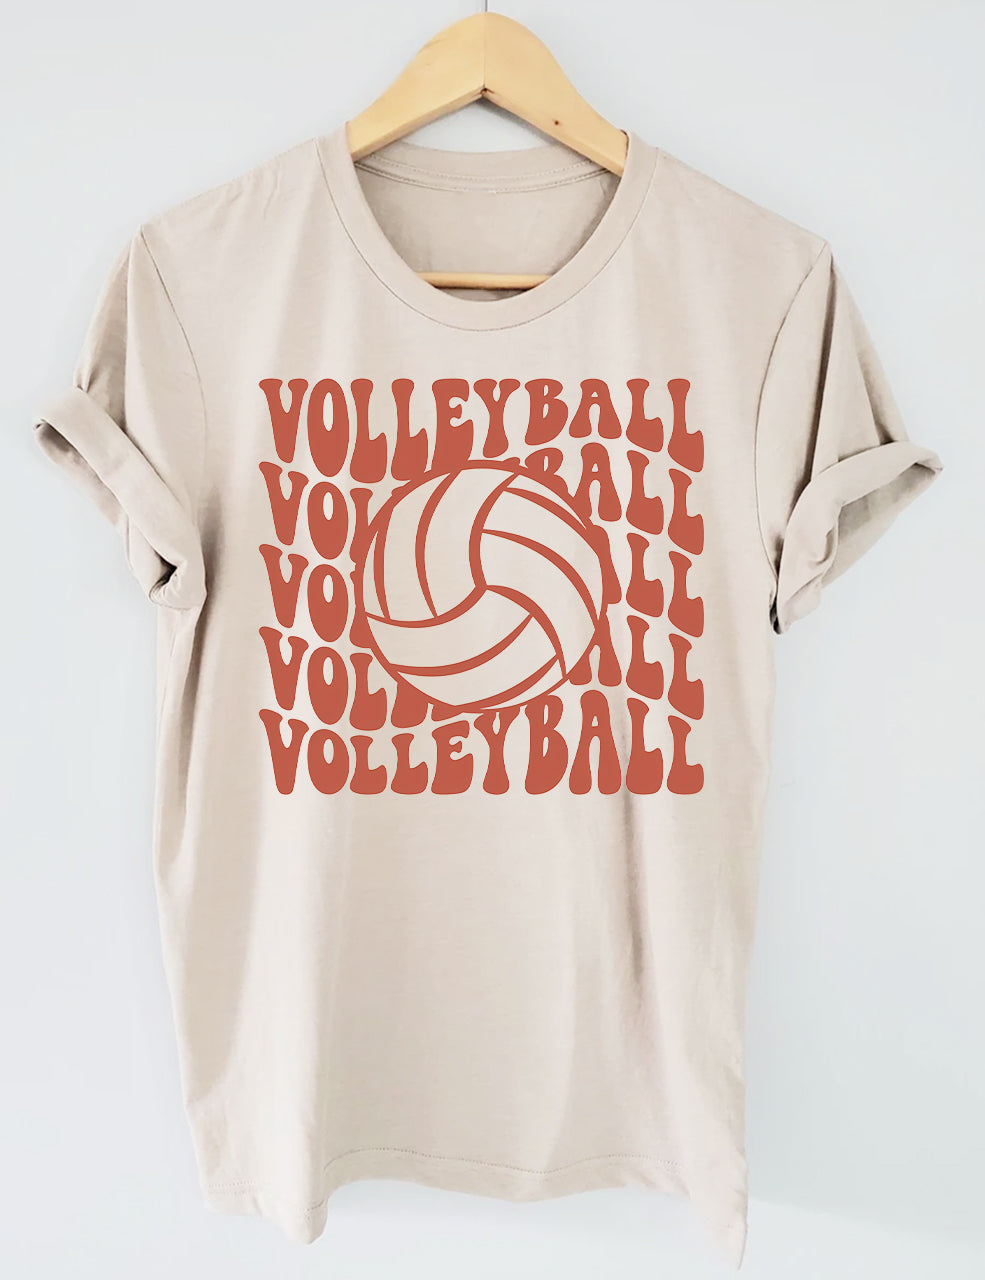 Volleyball Fan T-shirt